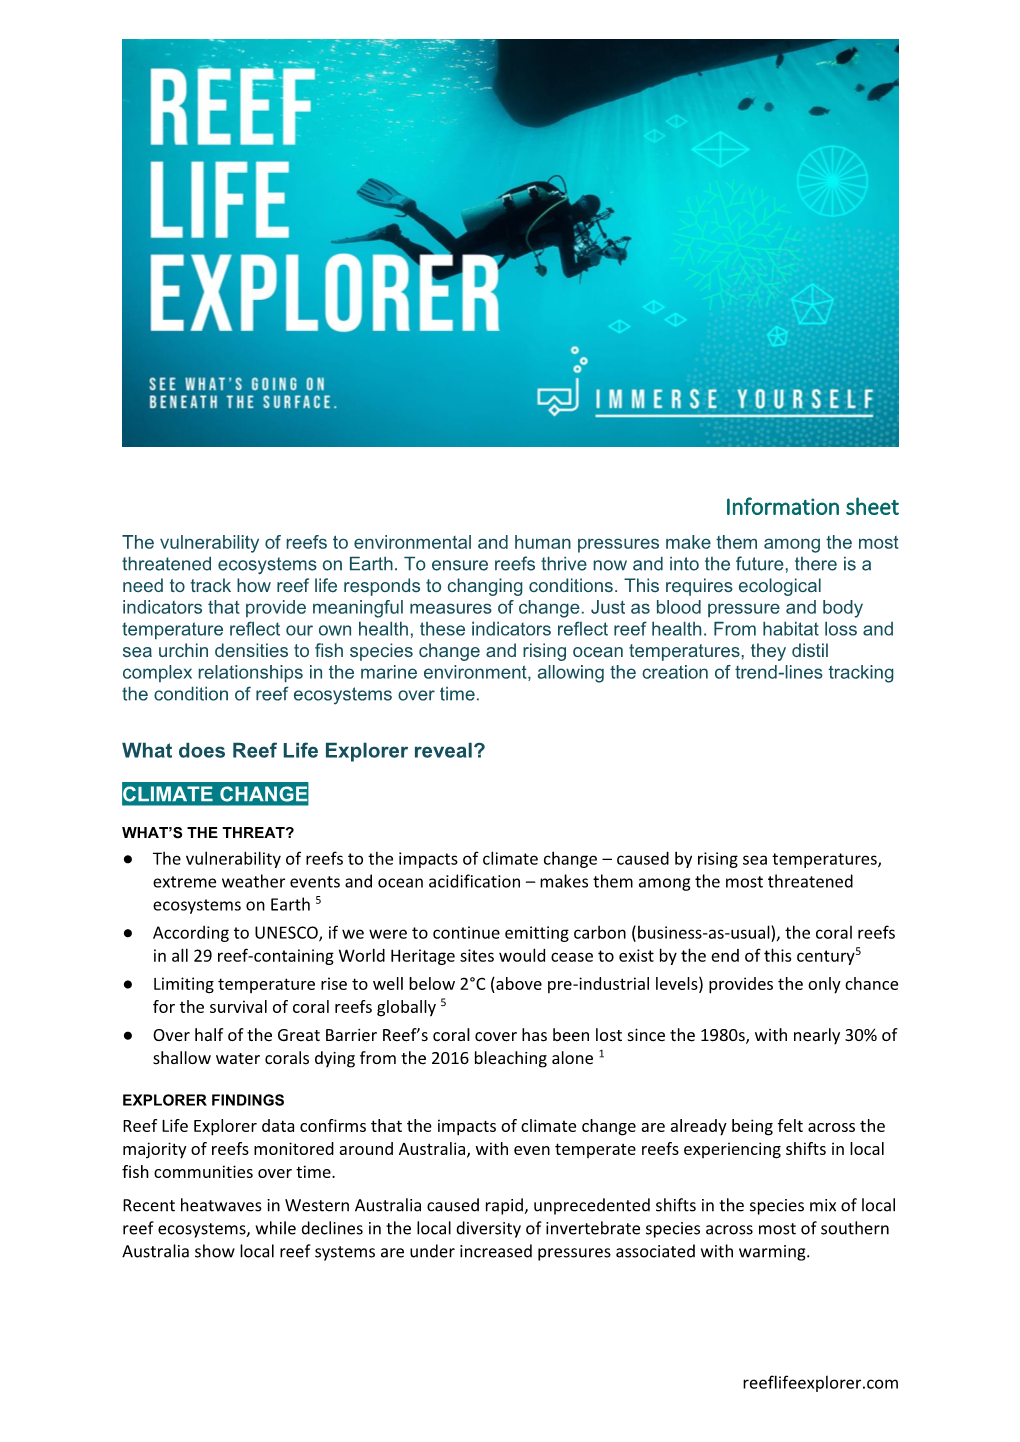 Reef Life Explorer Information Sheet